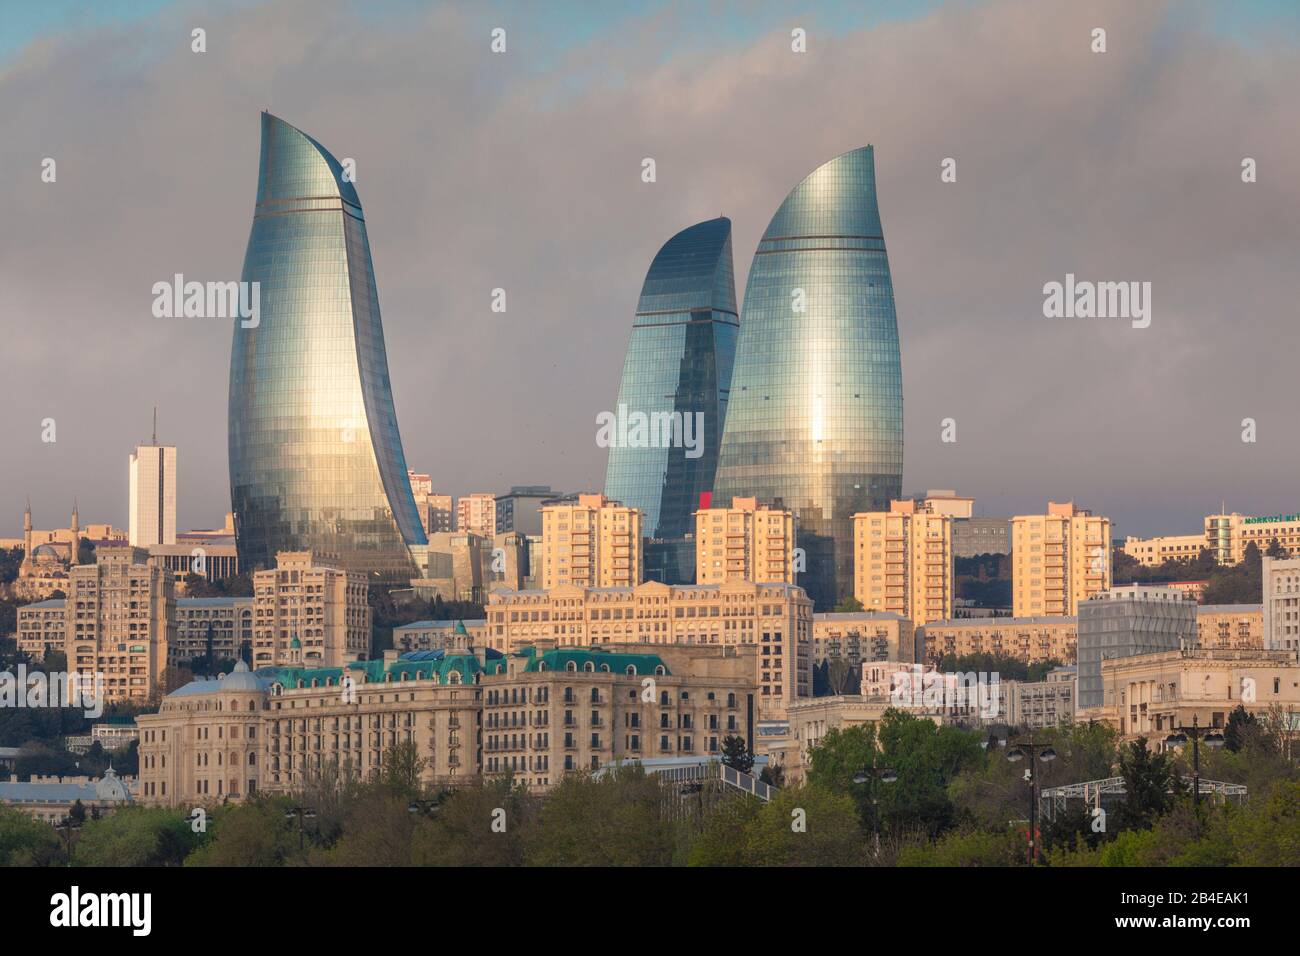 Azerbaijan, Baku, city skyline with Flame Towers form Baku Bay, dawn Stock Photo